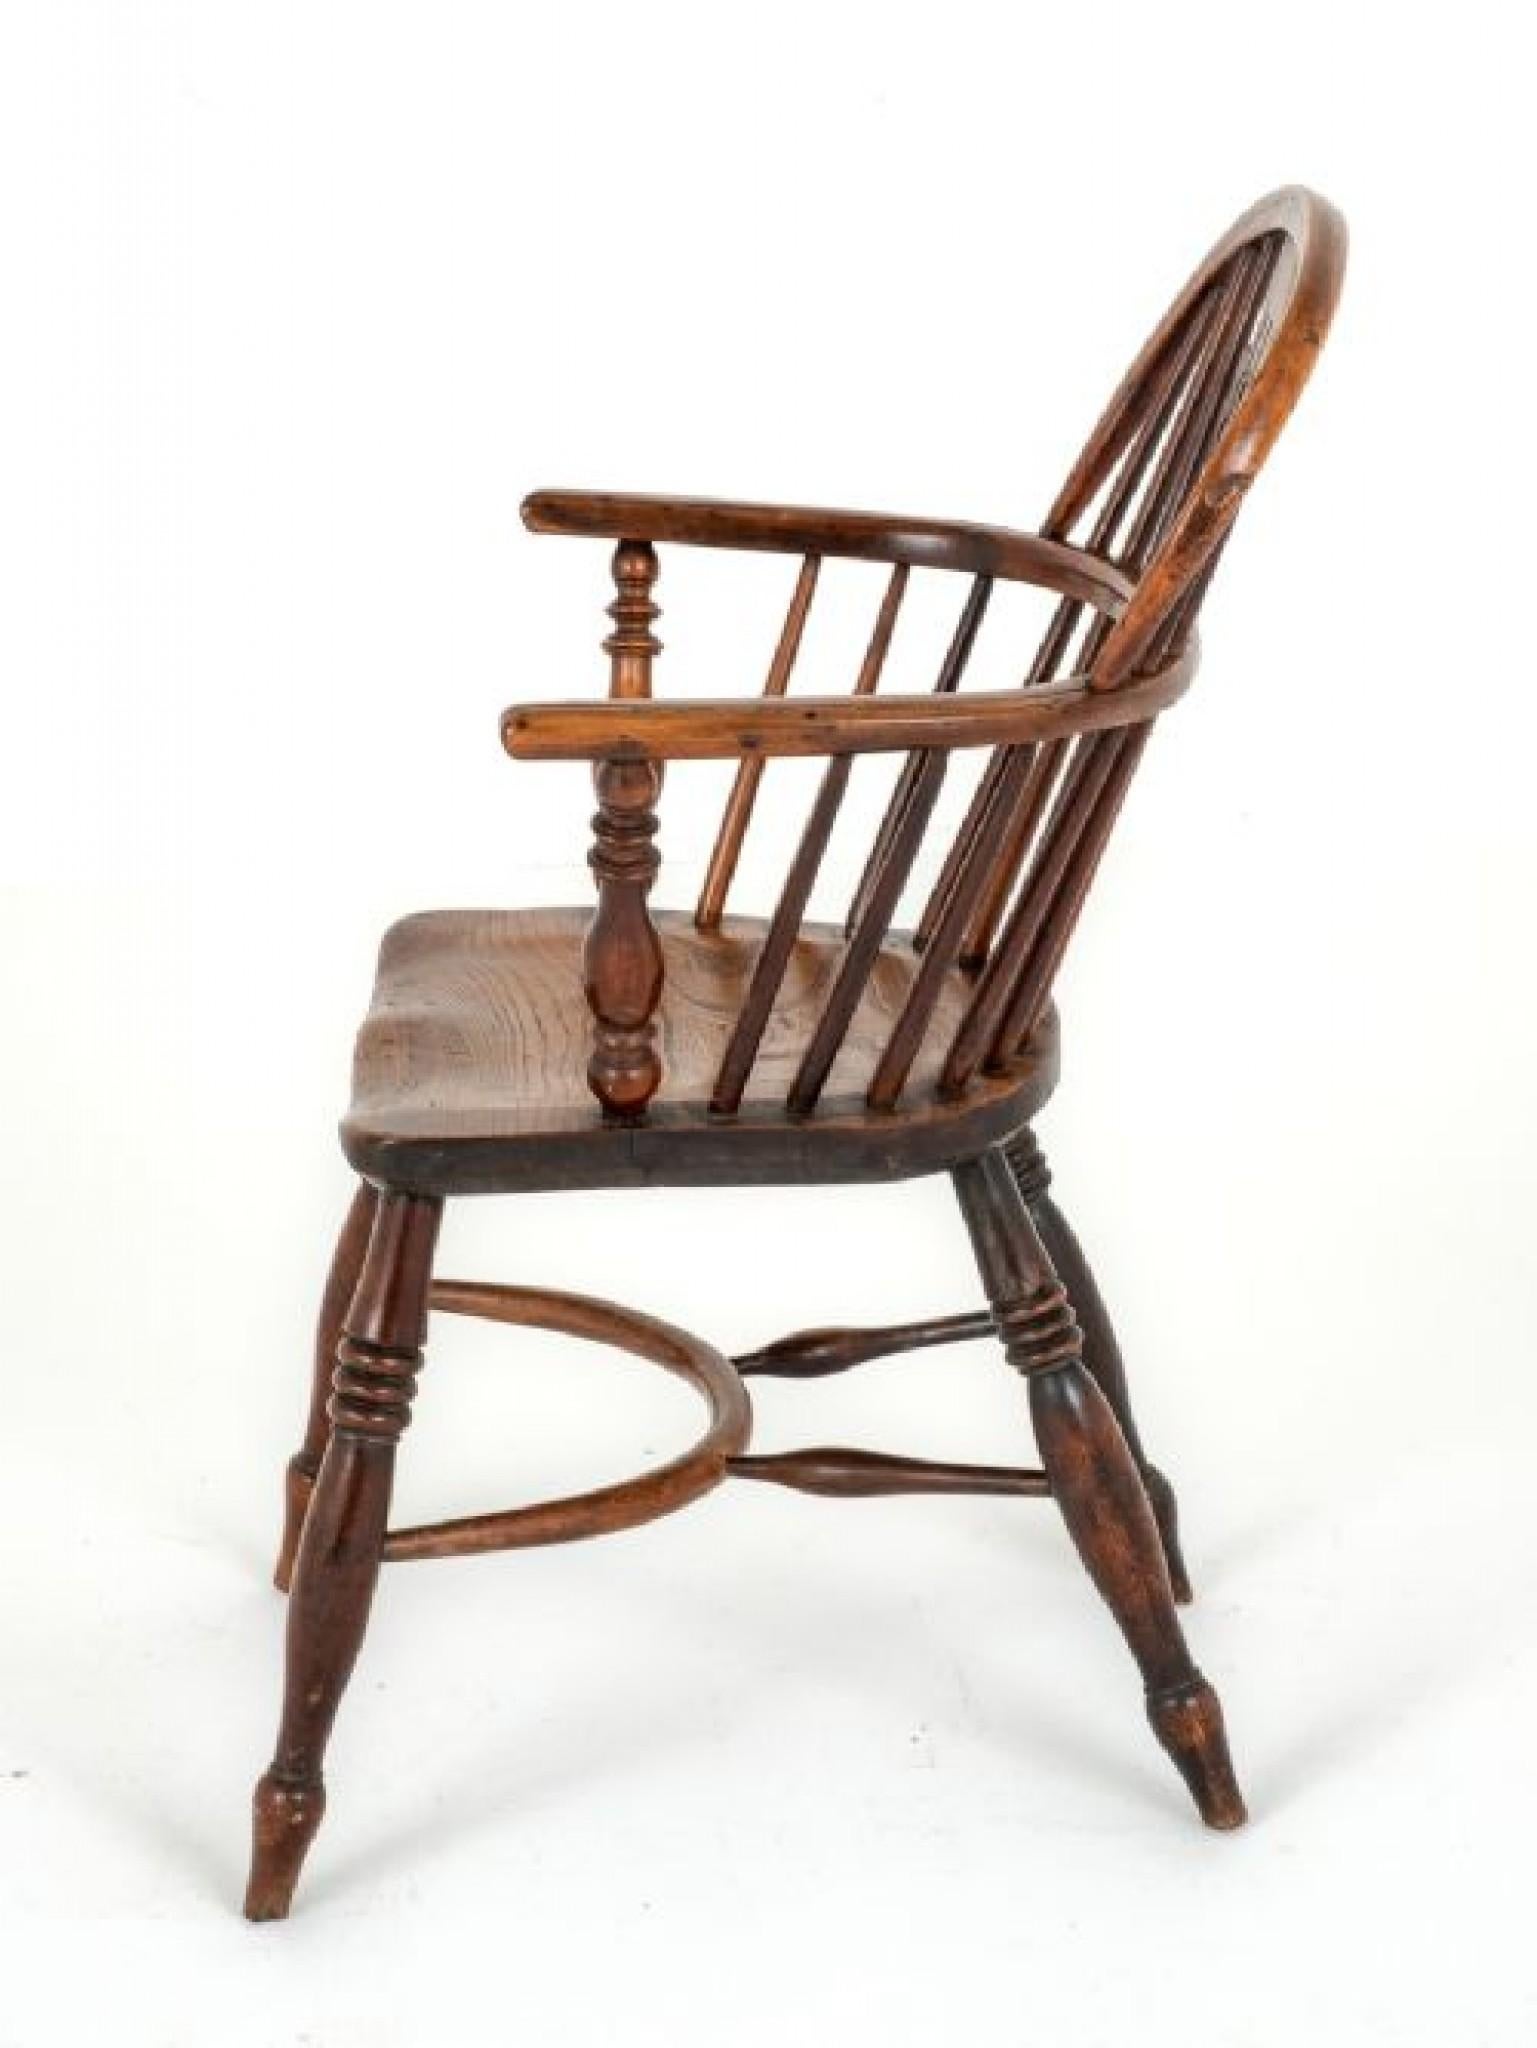 Chaise géorgienne de Windsor.
Cette chaise est fabriquée en bois d'orme et d'if.
Circa 1800
Debout sur des pieds tournés en anneau avec un tendeur de crinoline.
Les supports de bras sont de forme tournée.
La chaise comporte un dossier percé et